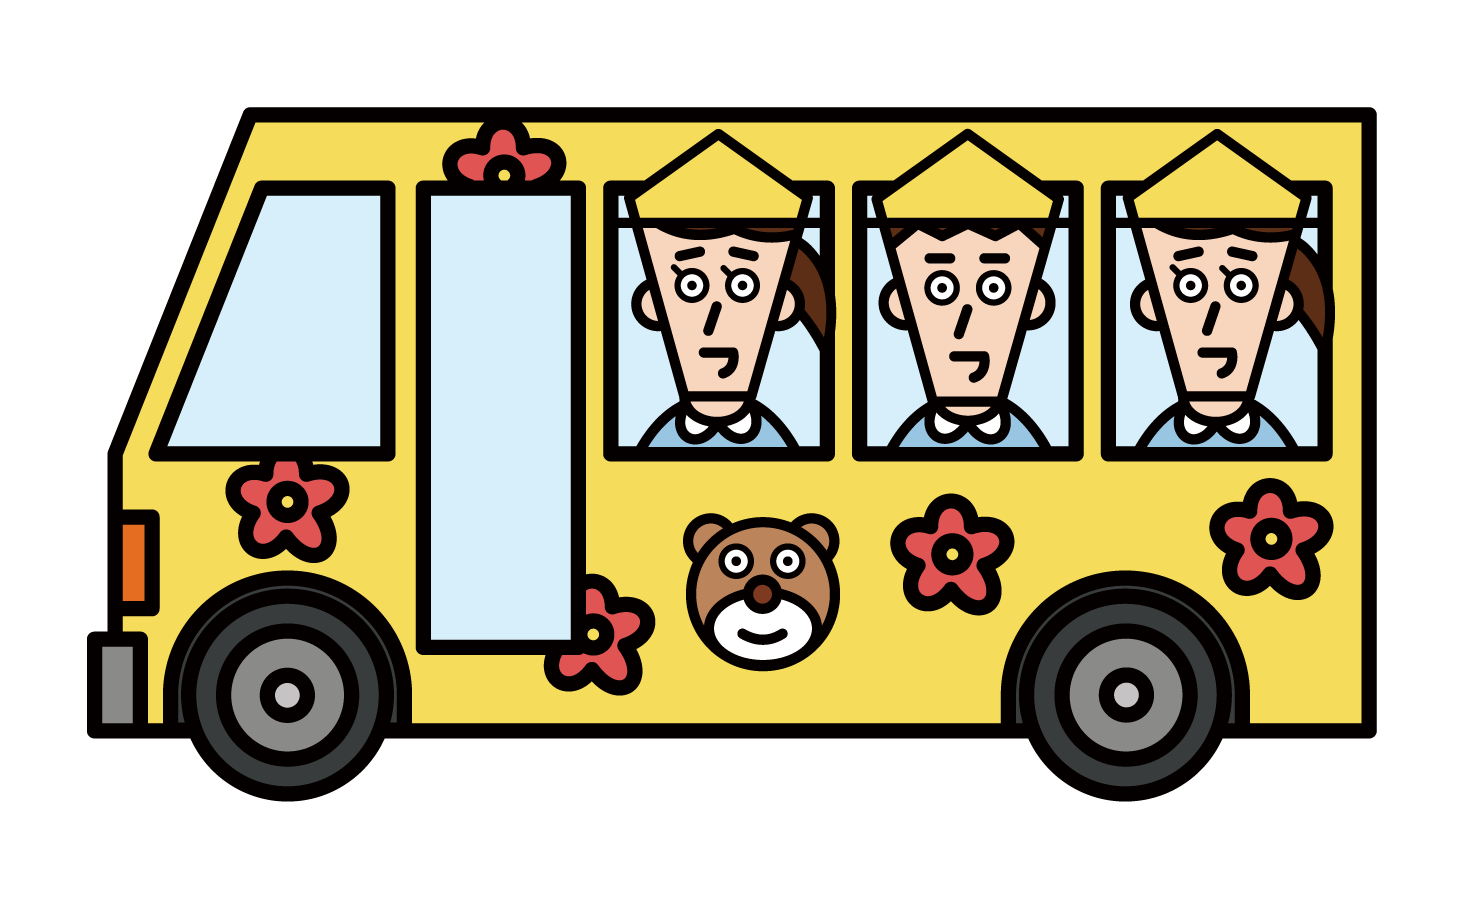 乘坐接送巴士的學齡前兒童和學齡前兒童的插圖